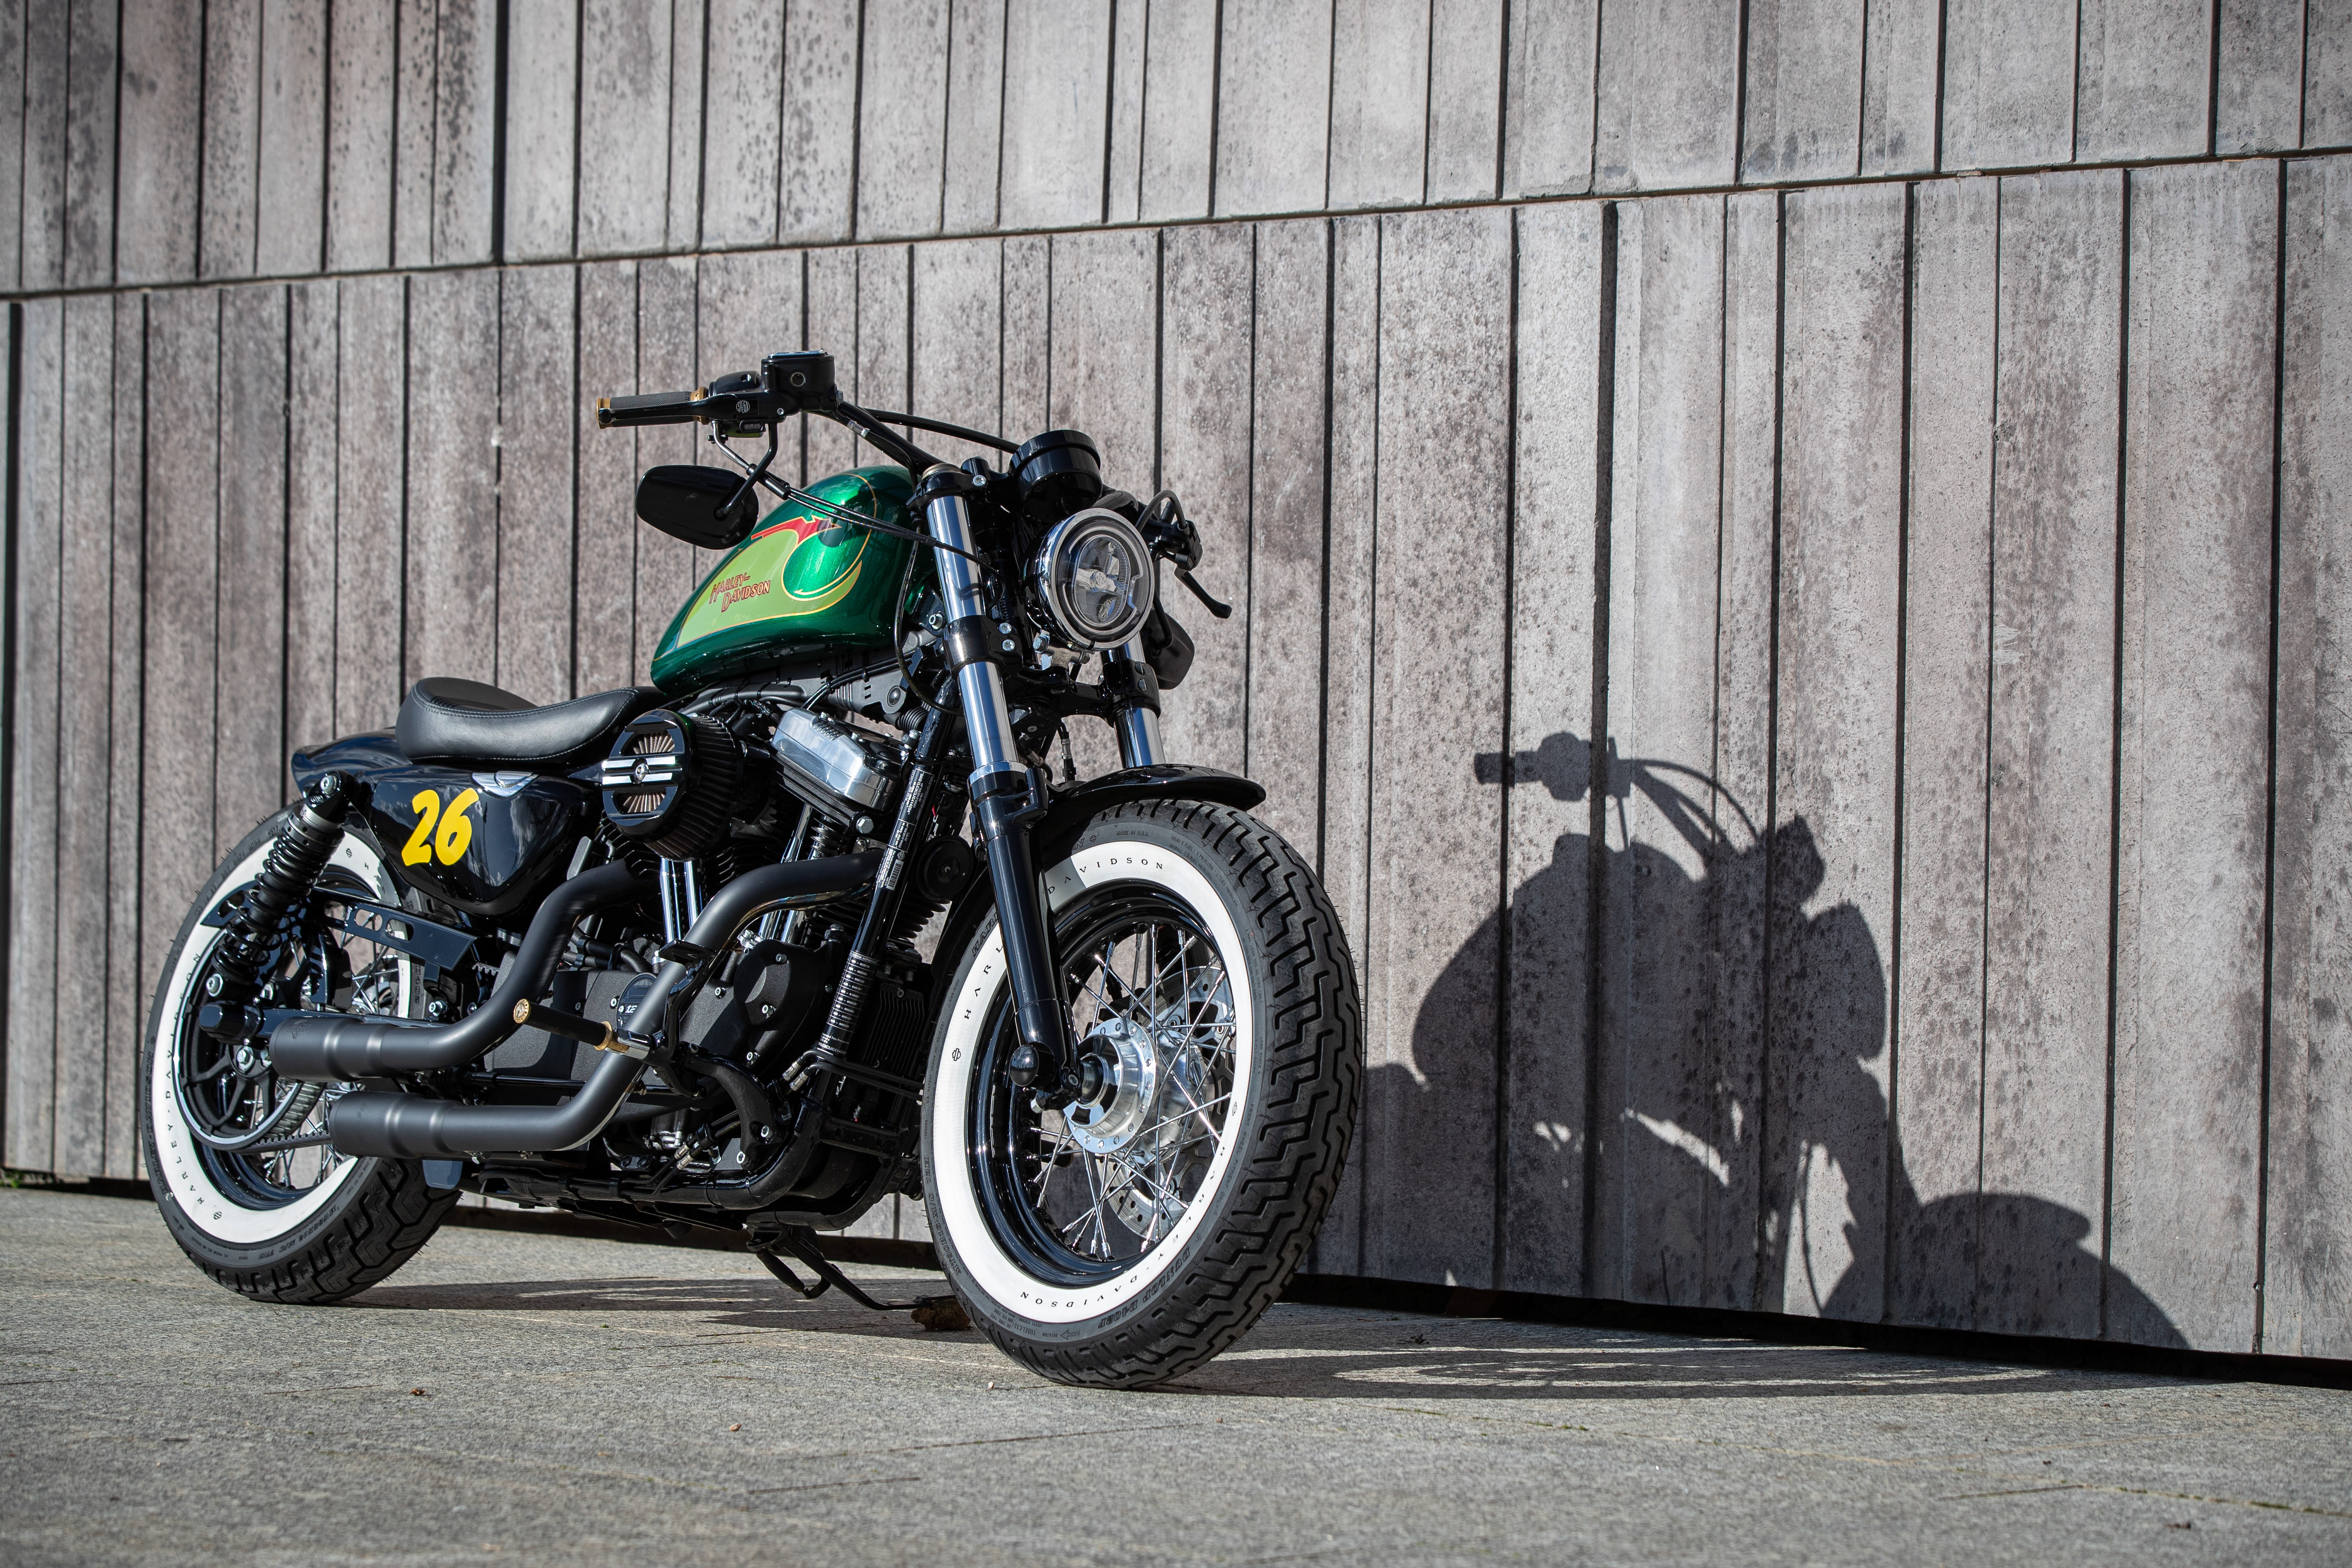 Ngam dan xe Harley-Davidson Sportster lot xac voi ban do Sykes hinh anh 14 2020_Harley_Davidson_Sportster_Custom_5211.jpg